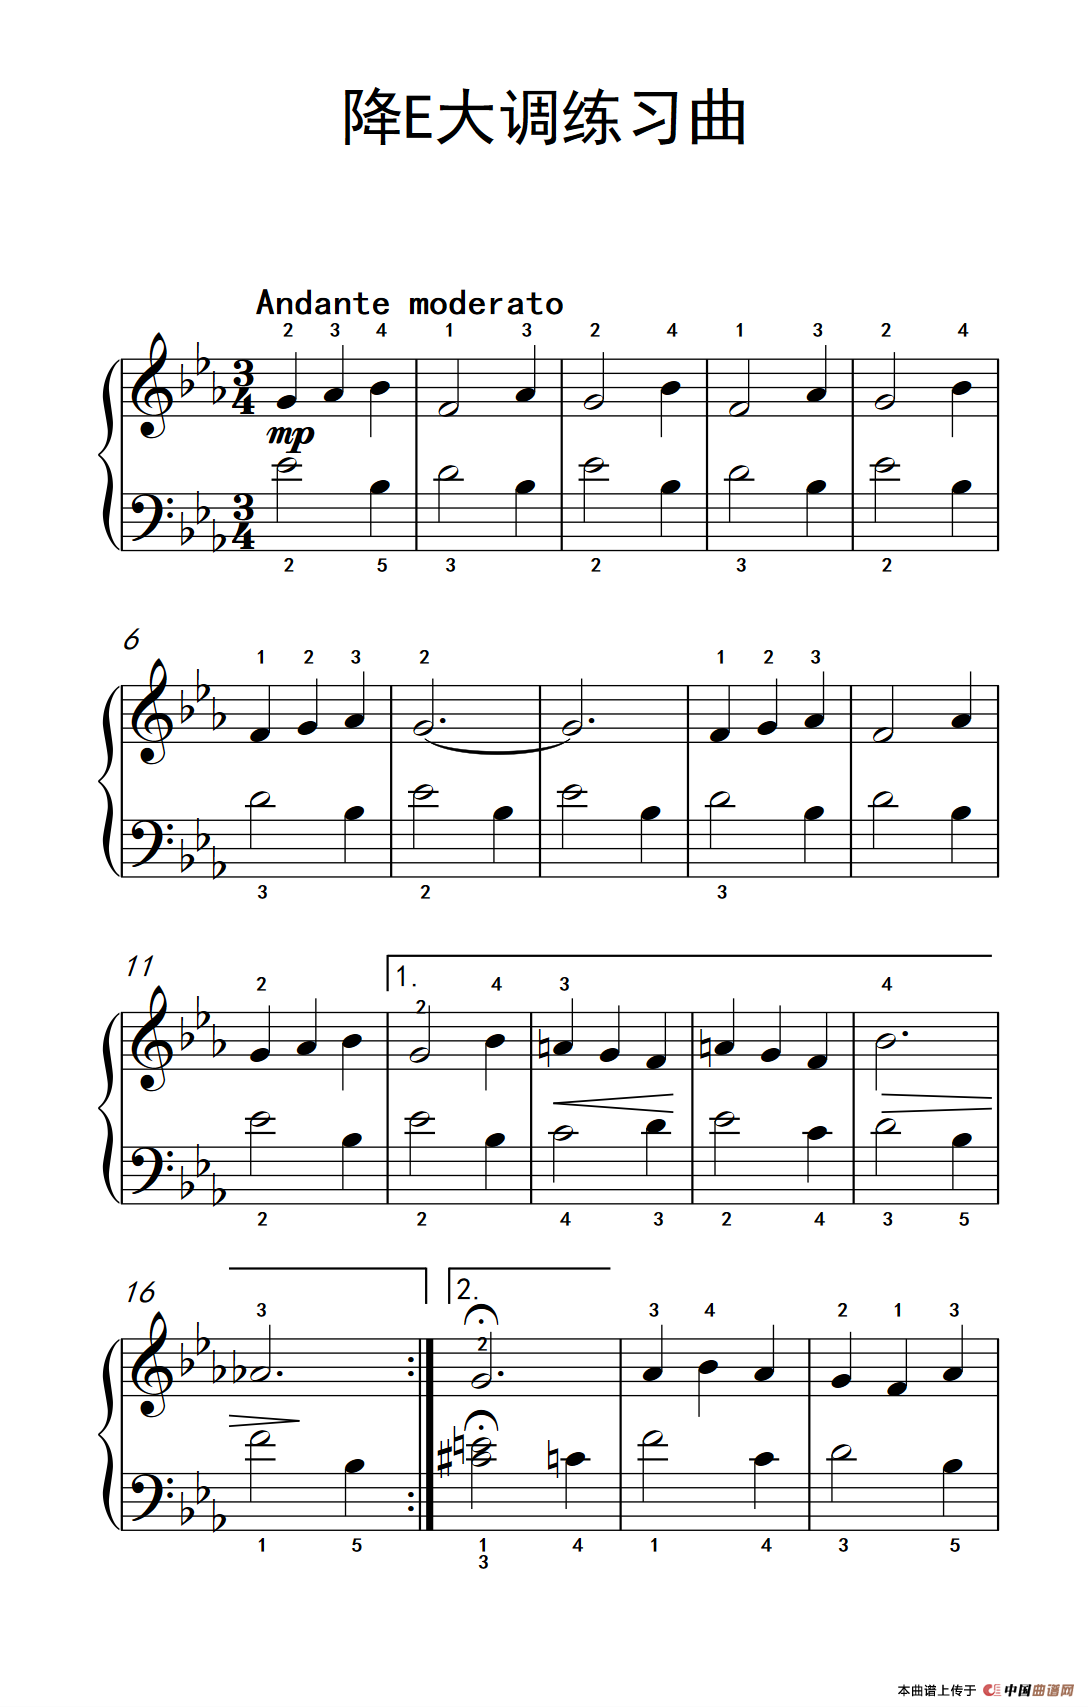 降e大调练习曲(约翰·汤普森 成人钢琴教程 第一册(1)_234_62_1.png